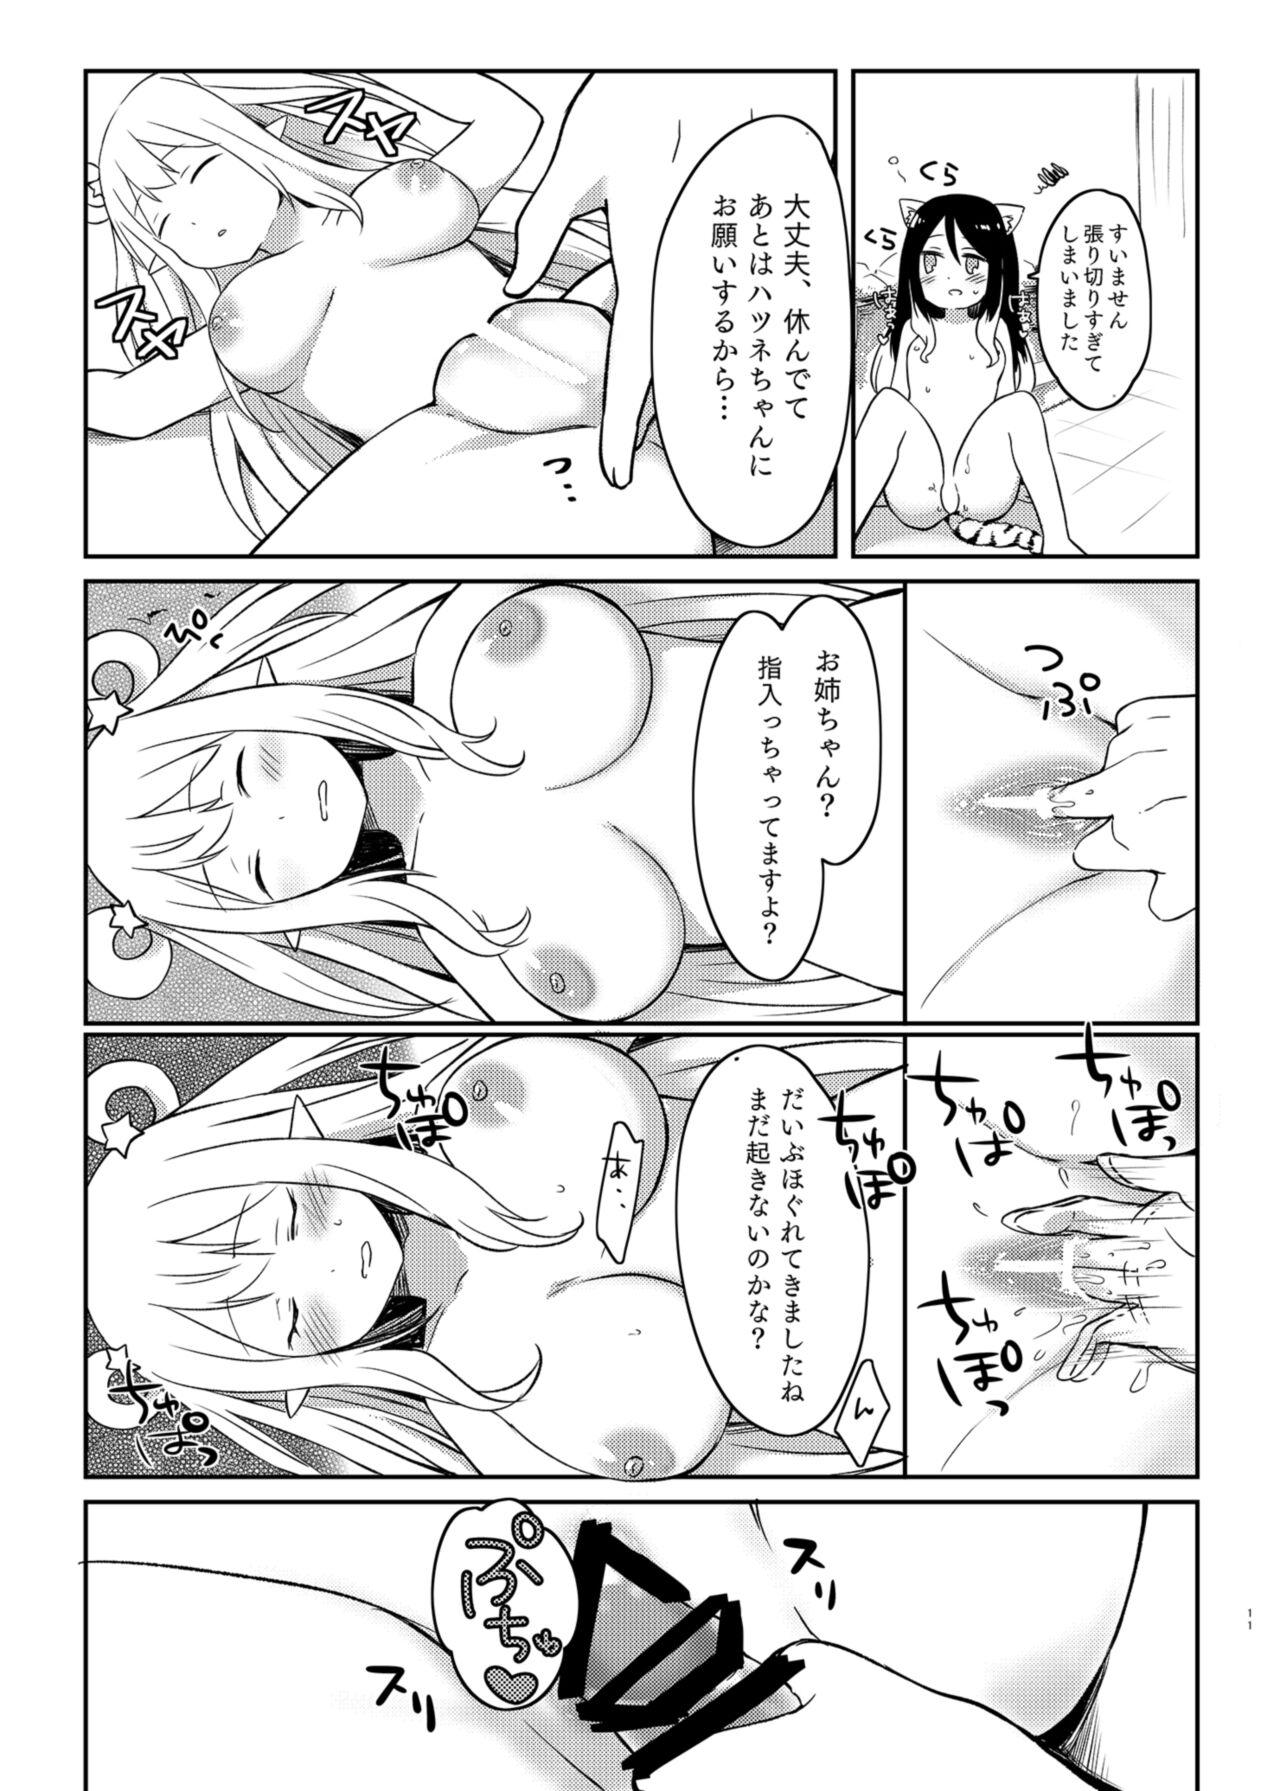 Reverse Cowgirl Hatsune to Shiori no Yukemuri Daisakusen - Princess connect Students - Page 11